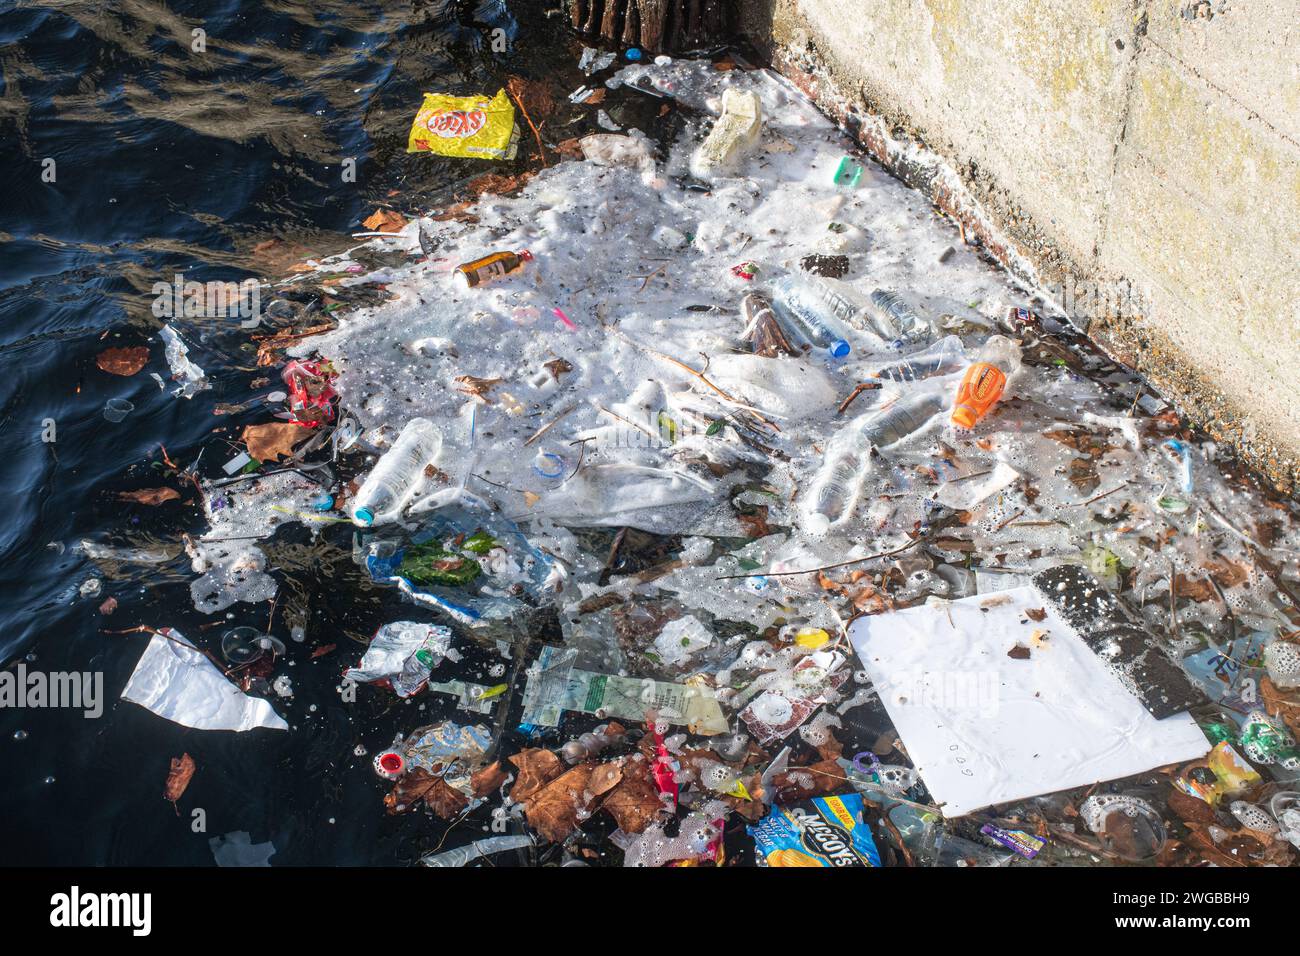 Molti rifiuti, soprattutto quelli di plastica, nell'acqua di Millwall Dock, Isle of Dogs, Londra, Inghilterra, Regno Unito. Concetto: Inquinamento plastico, inquinamento fluviale Foto Stock